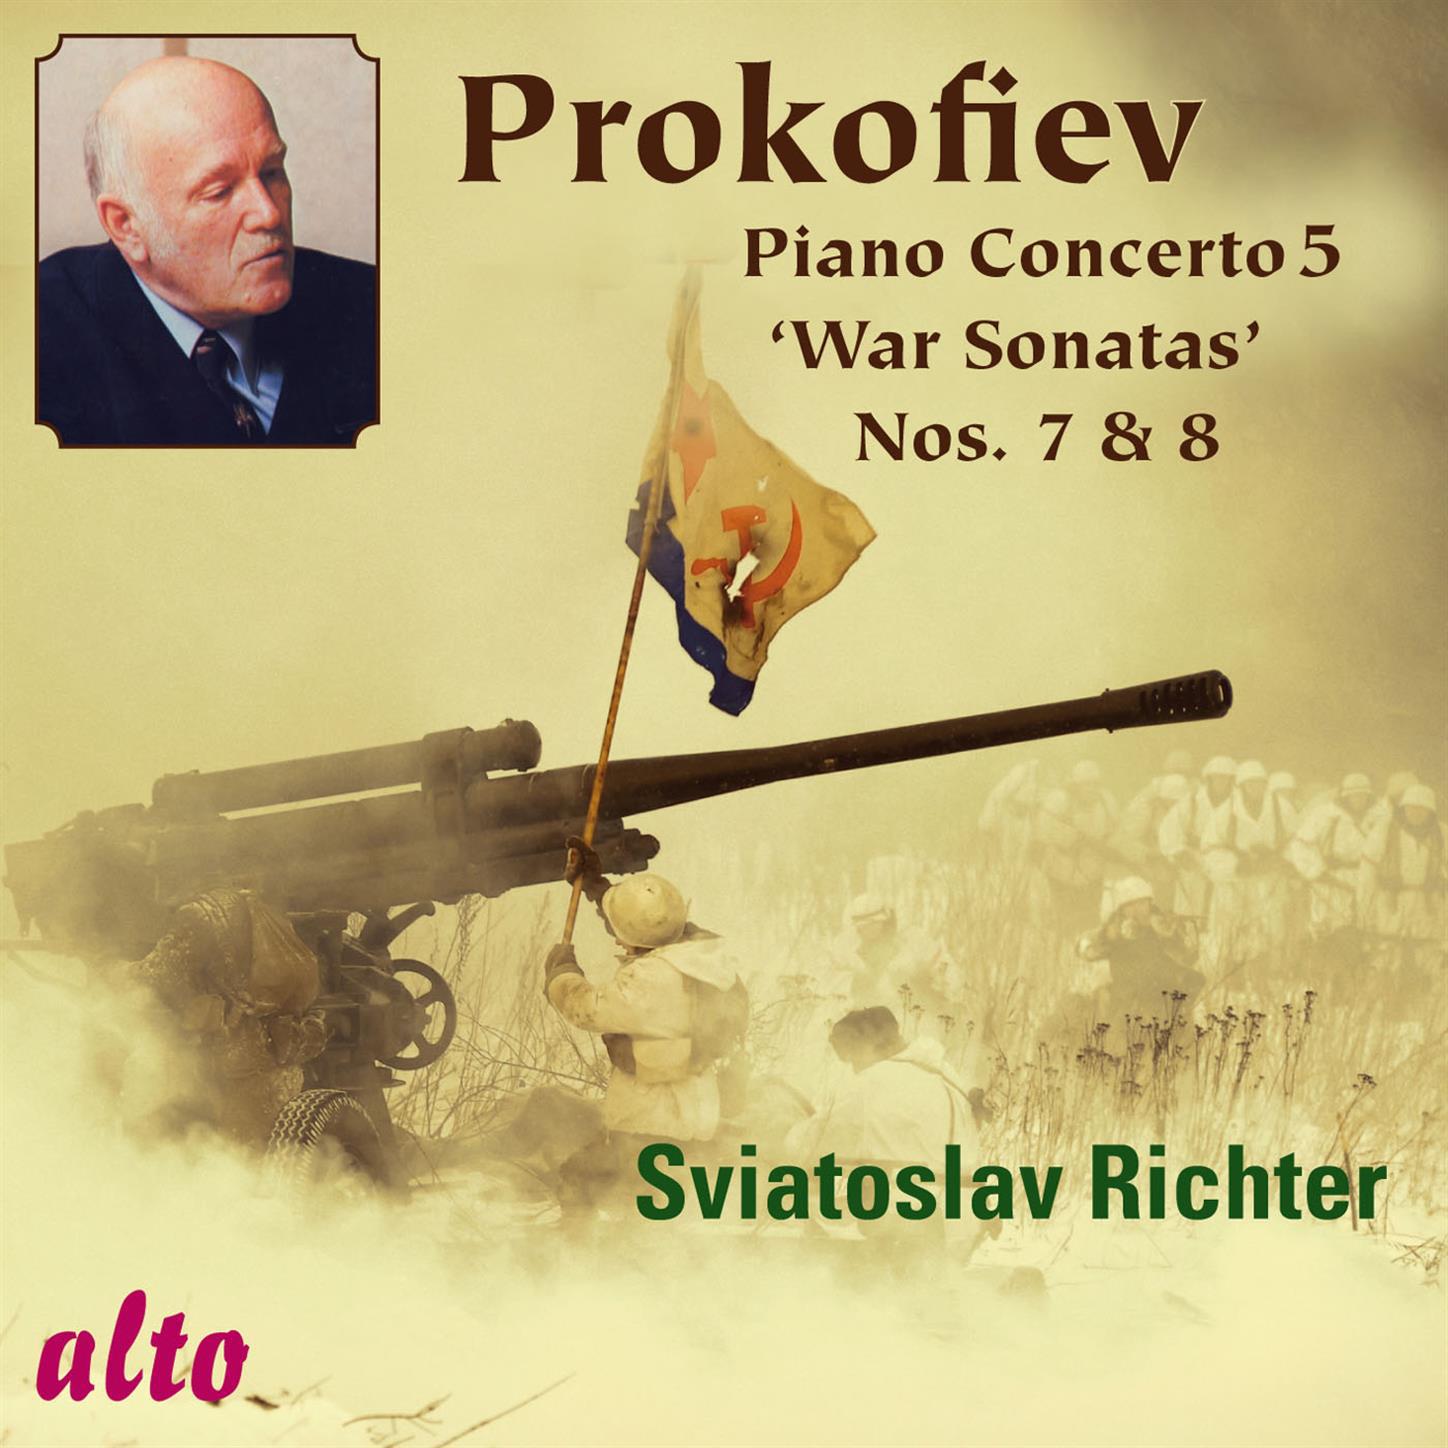 Piano Concerto No. 5 in G Major, Op. 55: III. Toccata: Allegro con fuoco